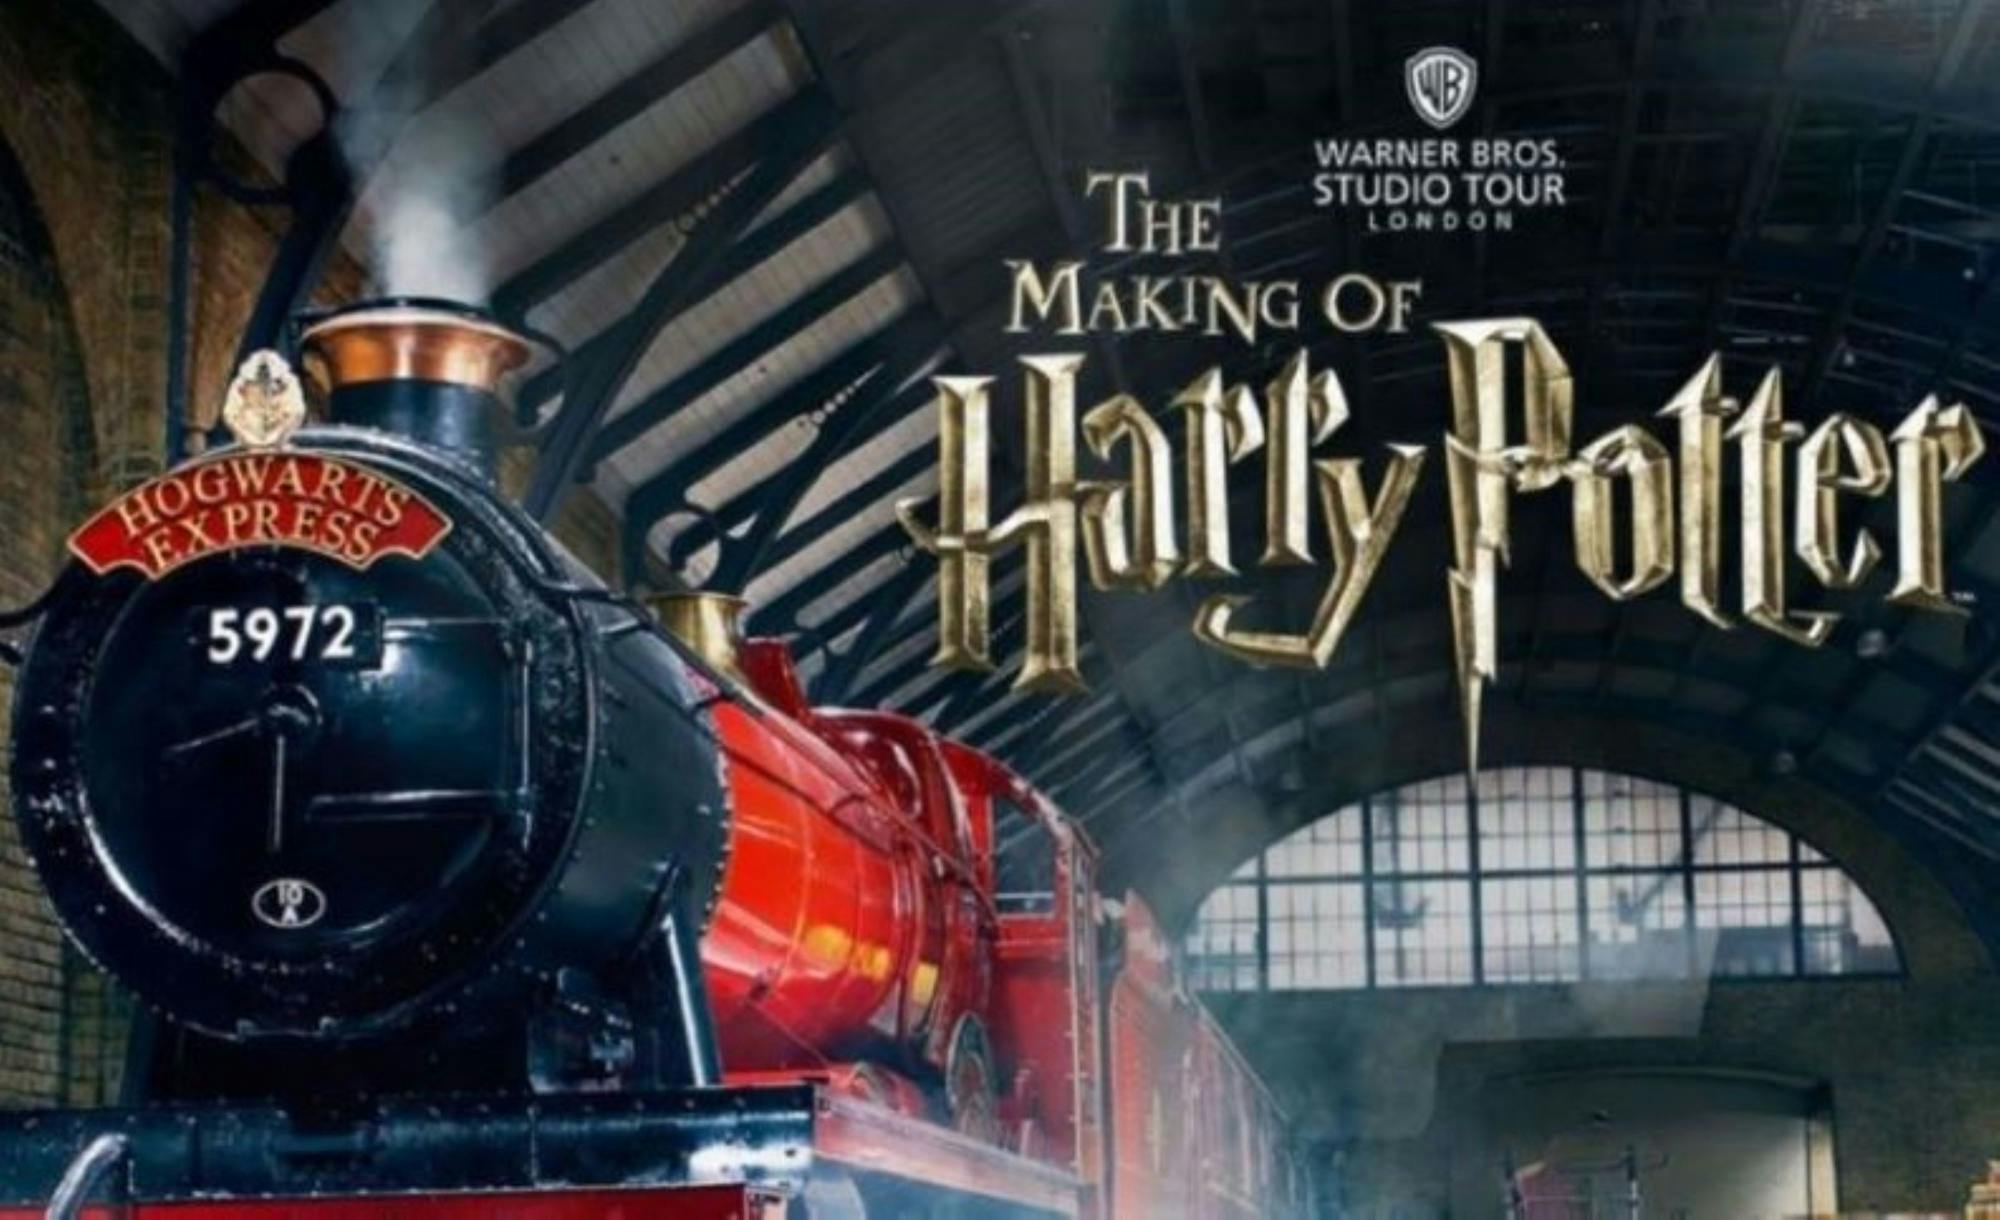 „The Making of Harry Potter” z Birmingham w pierwszej klasie